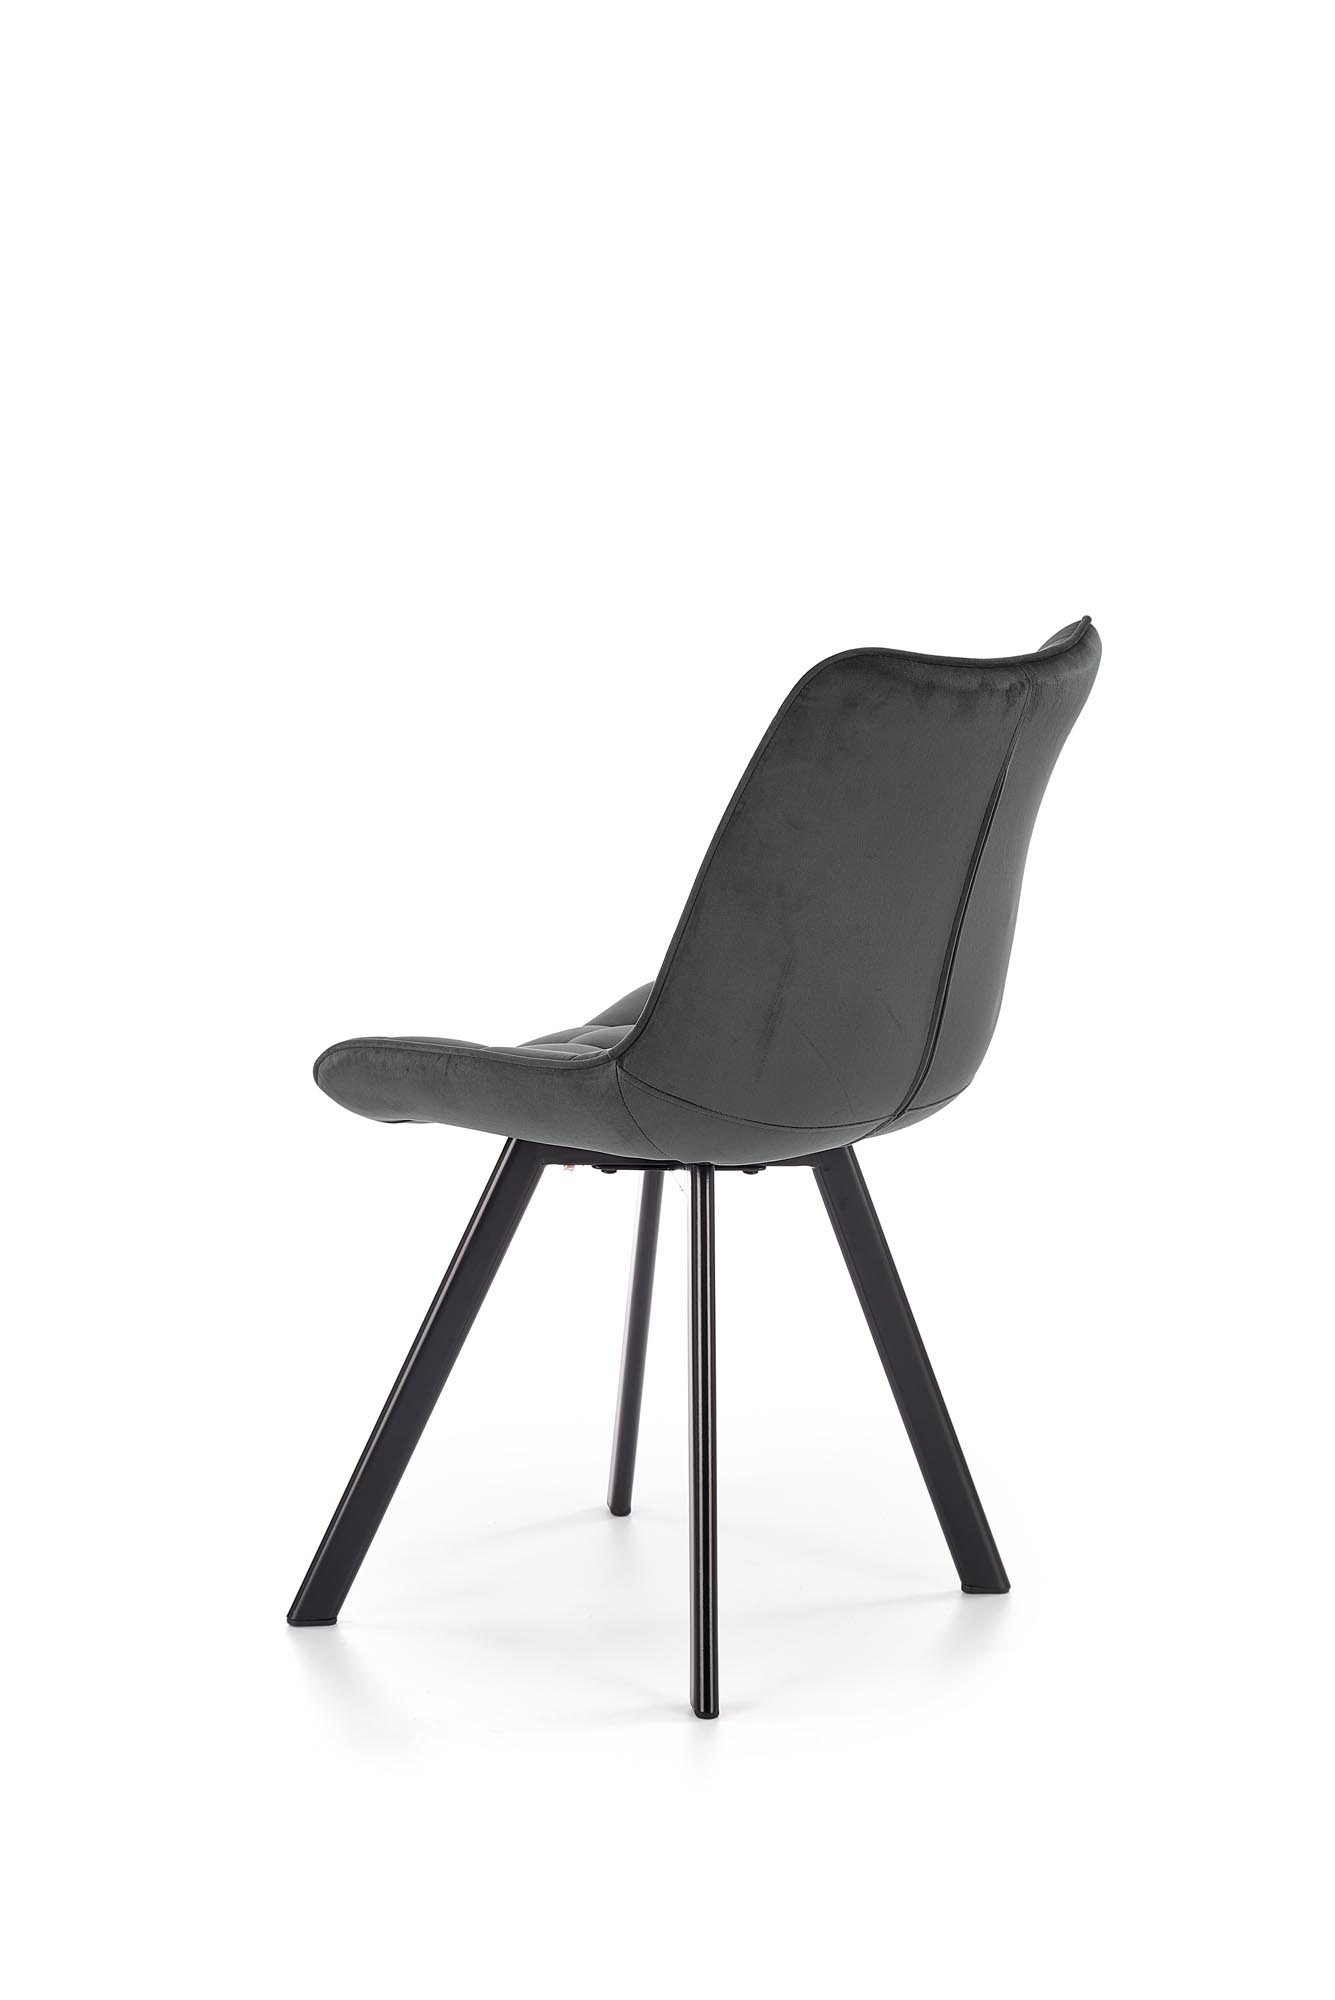 K332 kárpitozott szék - fekete / hamu szürke Židle čalouněné k332 - čierna/tmavý popel